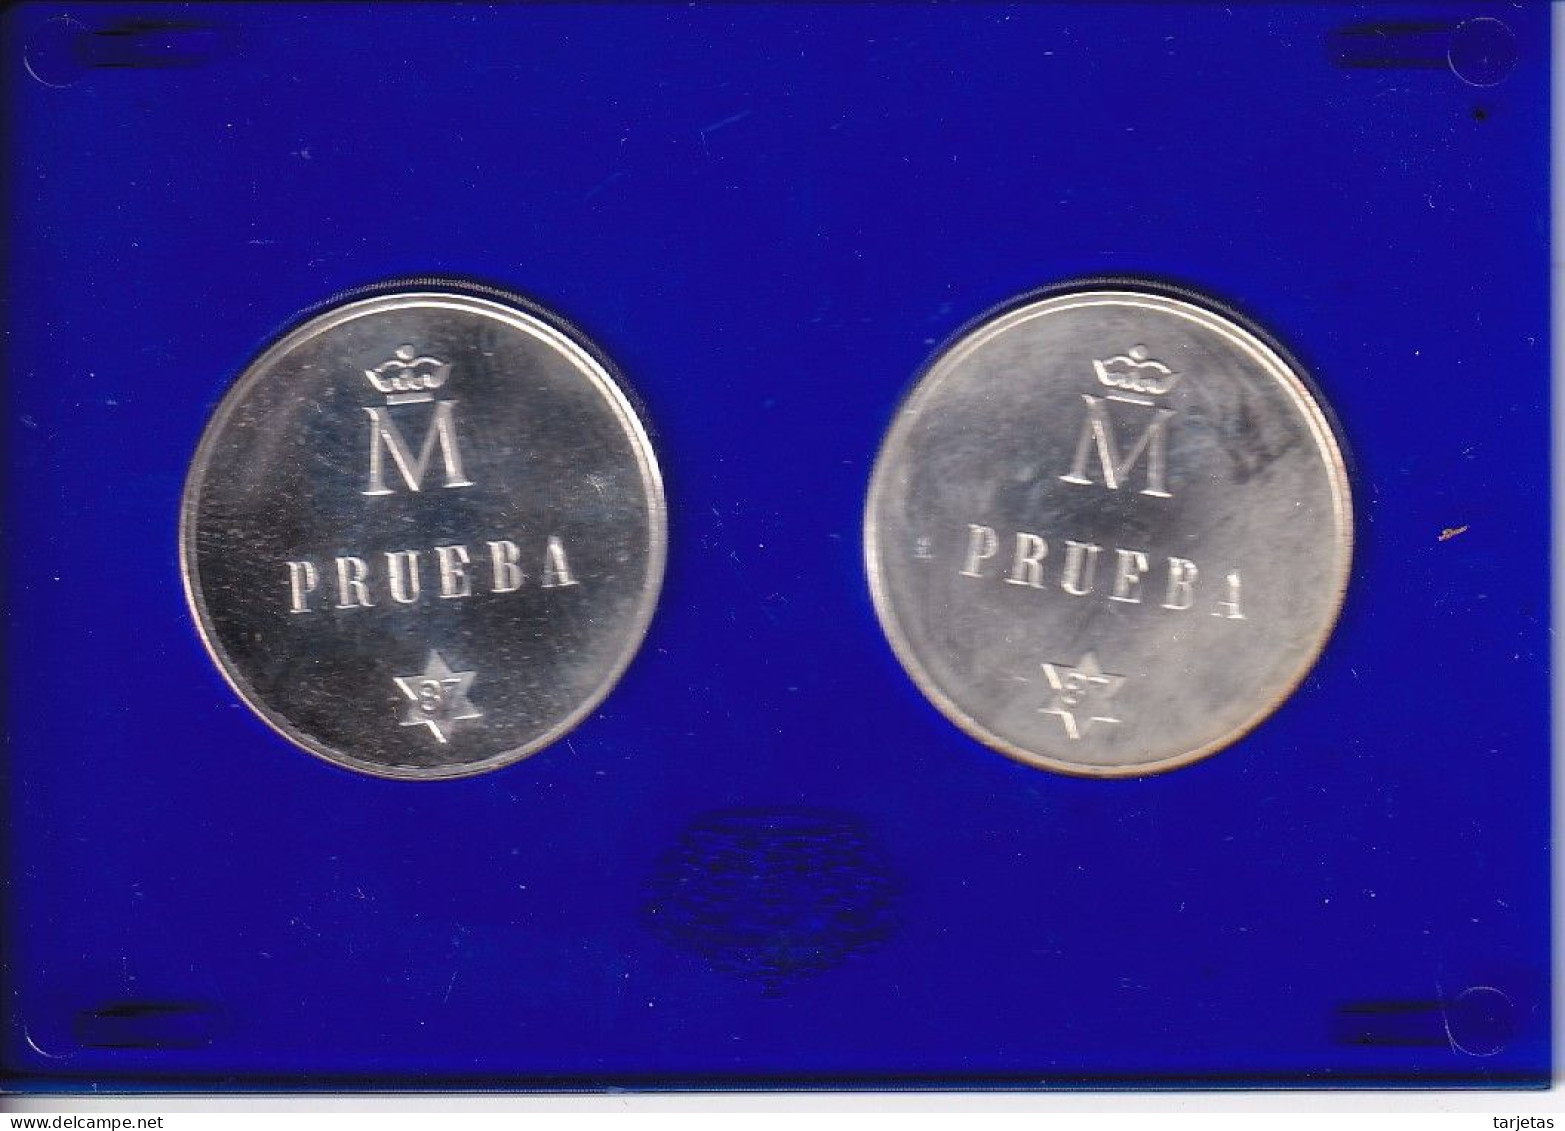 MONEDAS DE PLATA DE PRUEBA DE ESPAÑA DE 500 PESETAS DEL AÑO 1987 EN ESTUCHE ORIGINAL (COIN) - Ongebruikte Sets & Proefsets